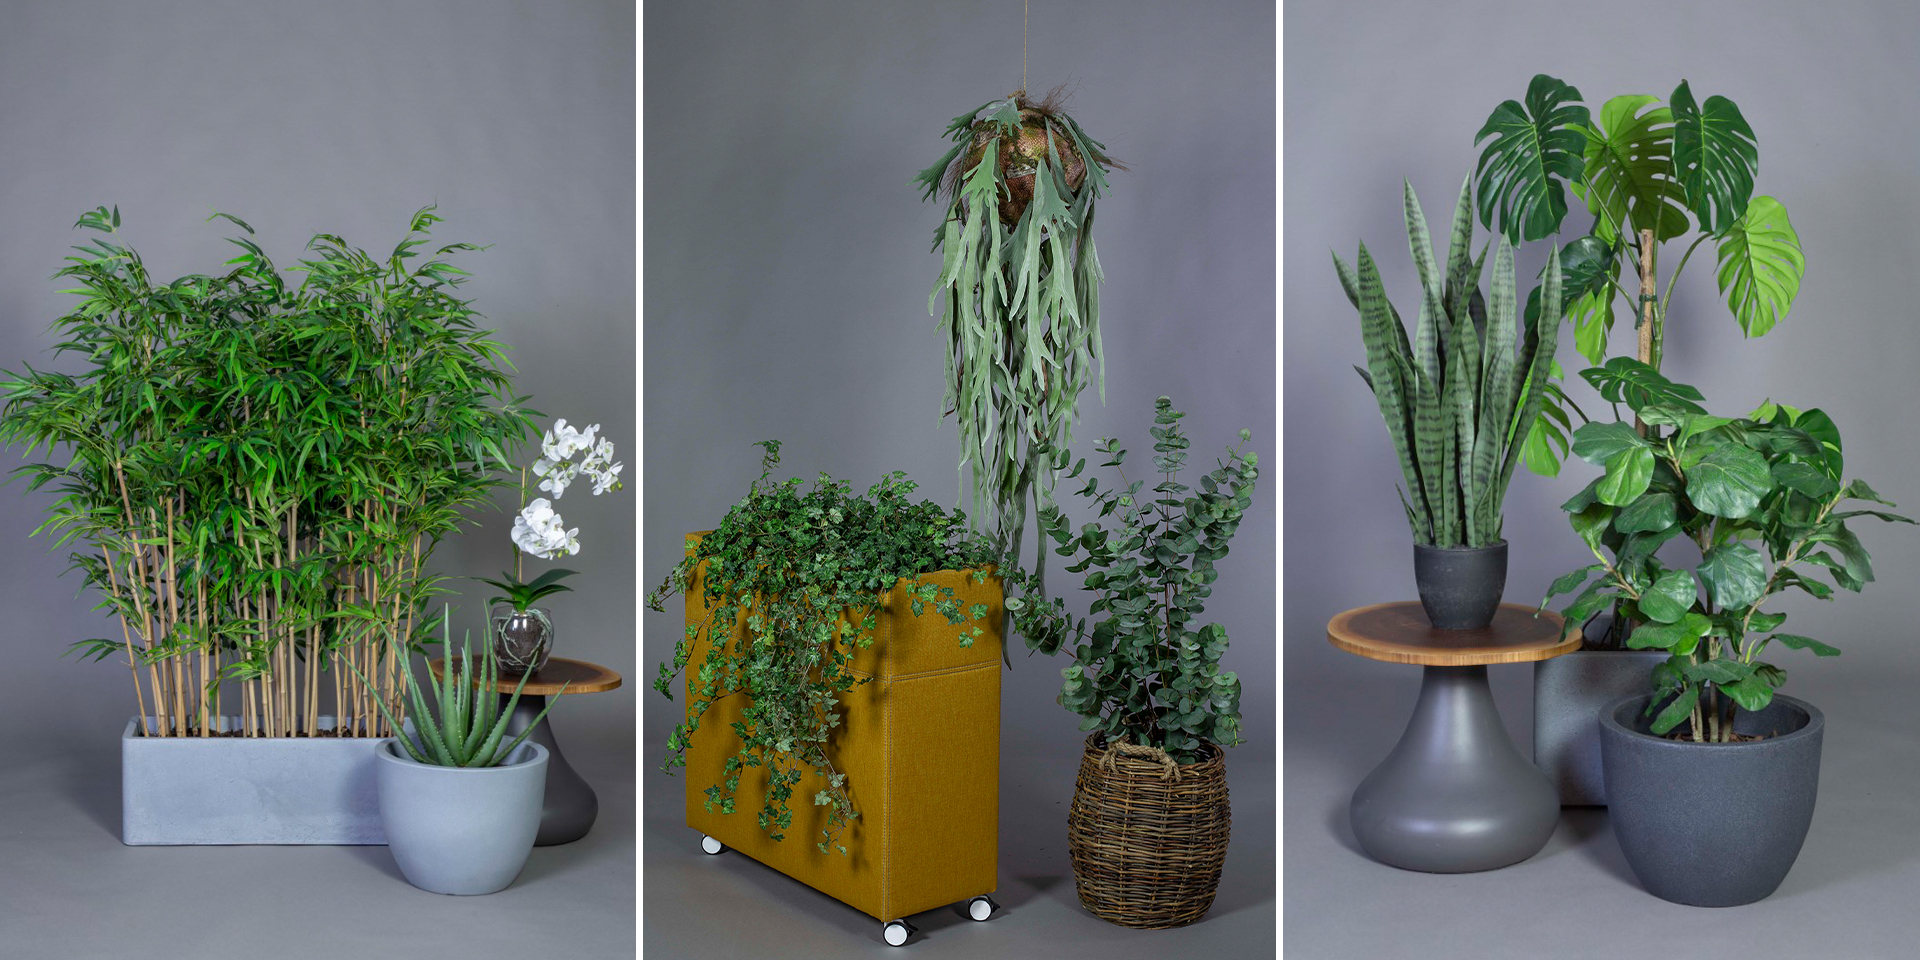 Kunstige planter fra Götessons: Aloe vera med potte, elghornsbregne i ampel, kunstig vedbend og et lille fiddlehead